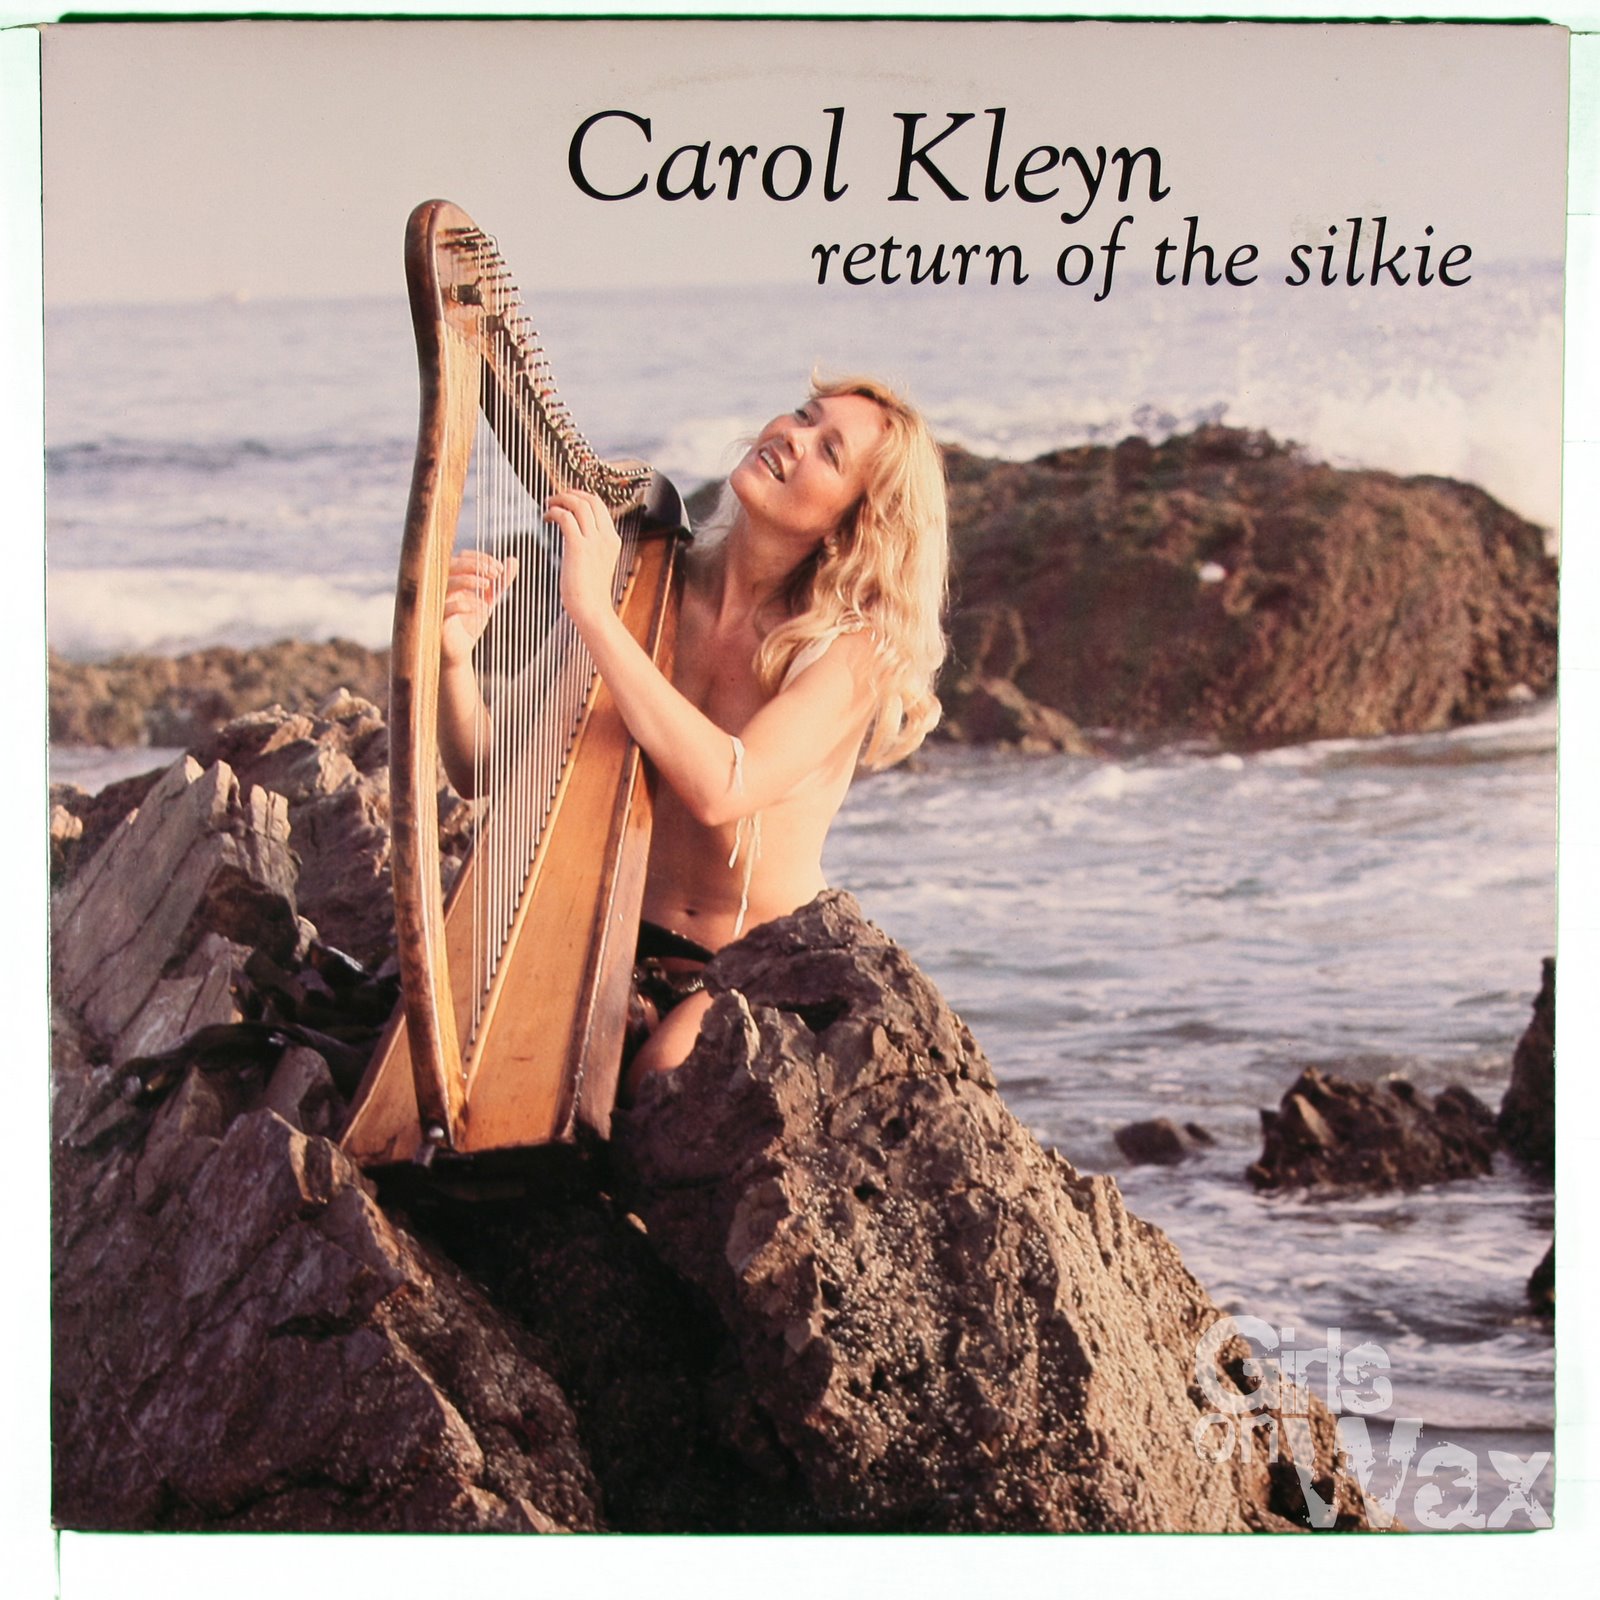 [carol+kleyn+-+return+of+the+silkie.jpg]